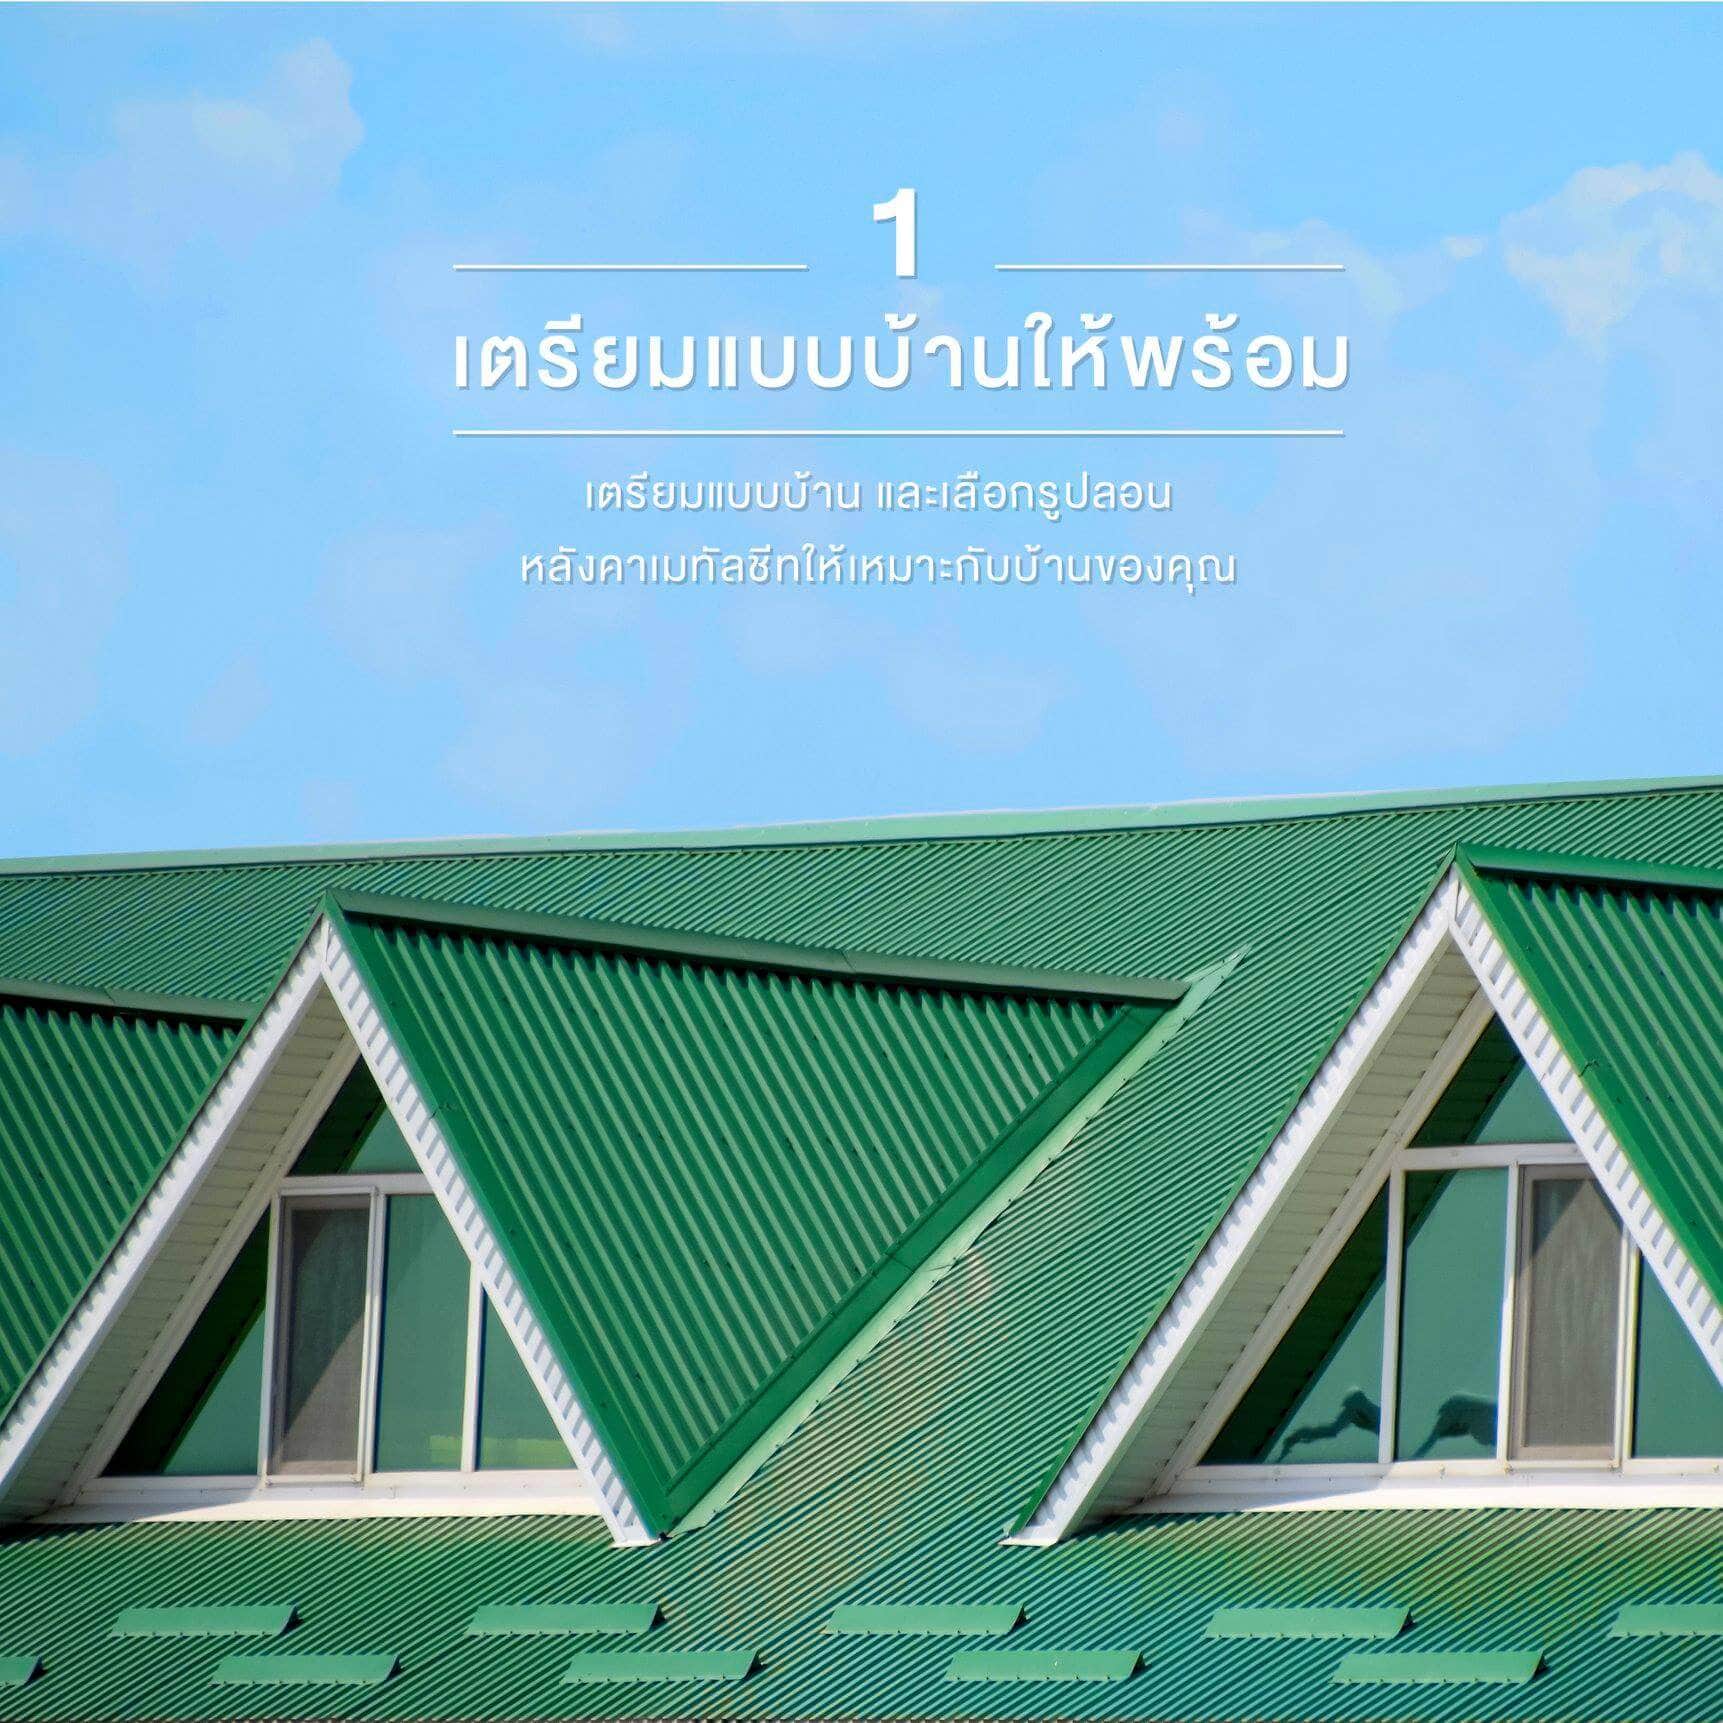 เตรียมแบบบ้านให้พร้อม - 5 ขั้นตอนง่ายๆ ในการเลือกซื้อเมทัลชีท | NS BlueScope Thailand